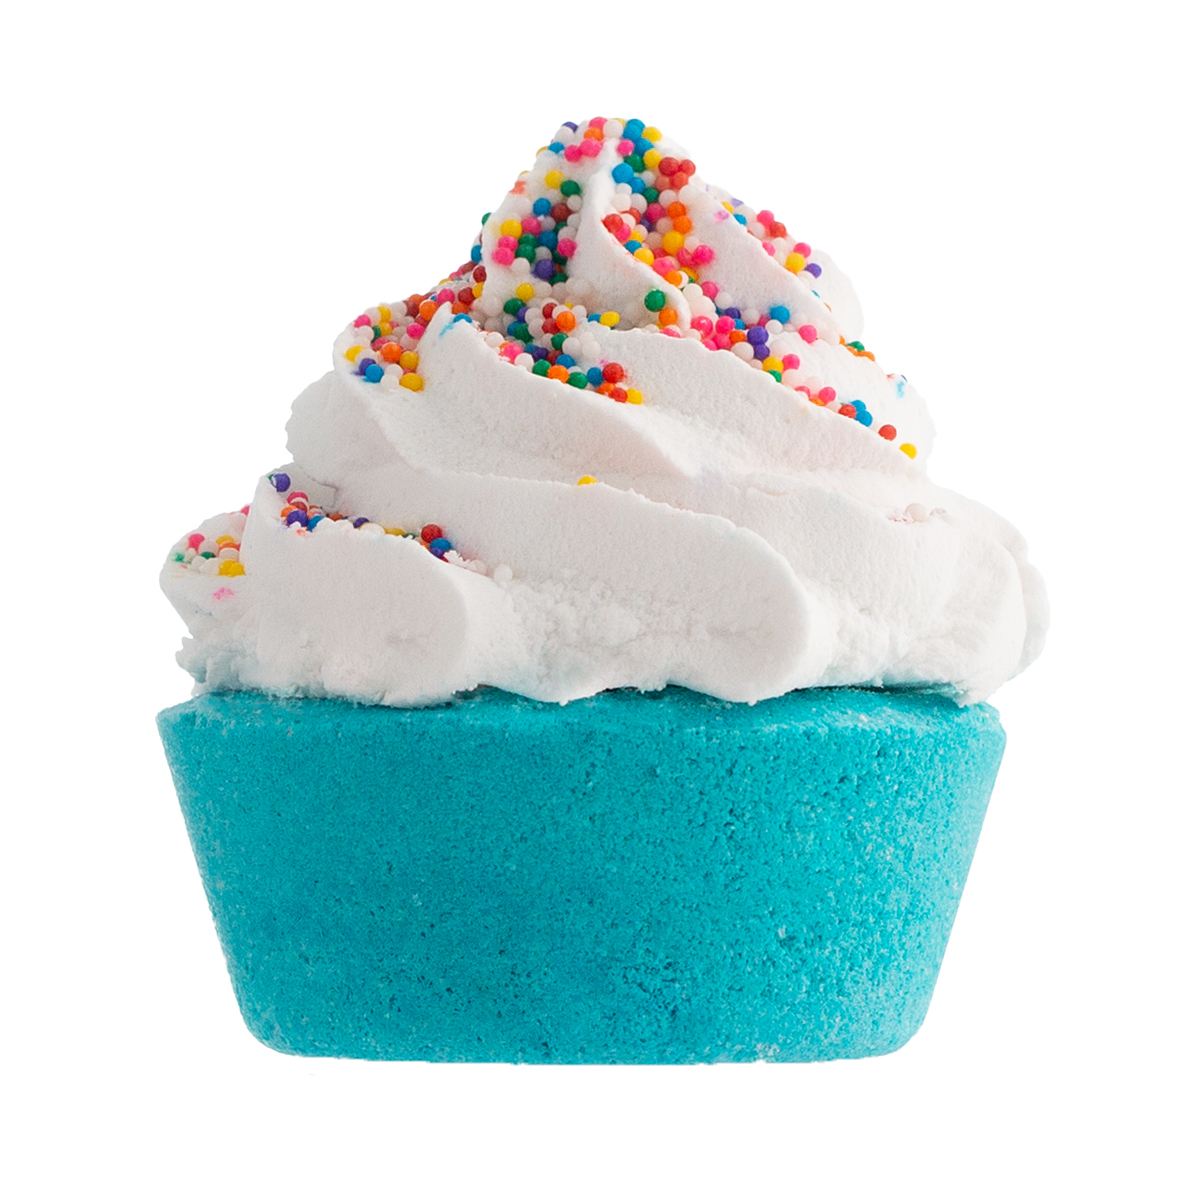 Fizz & Bubble Birthday Cake Bubble Bath Cupcake